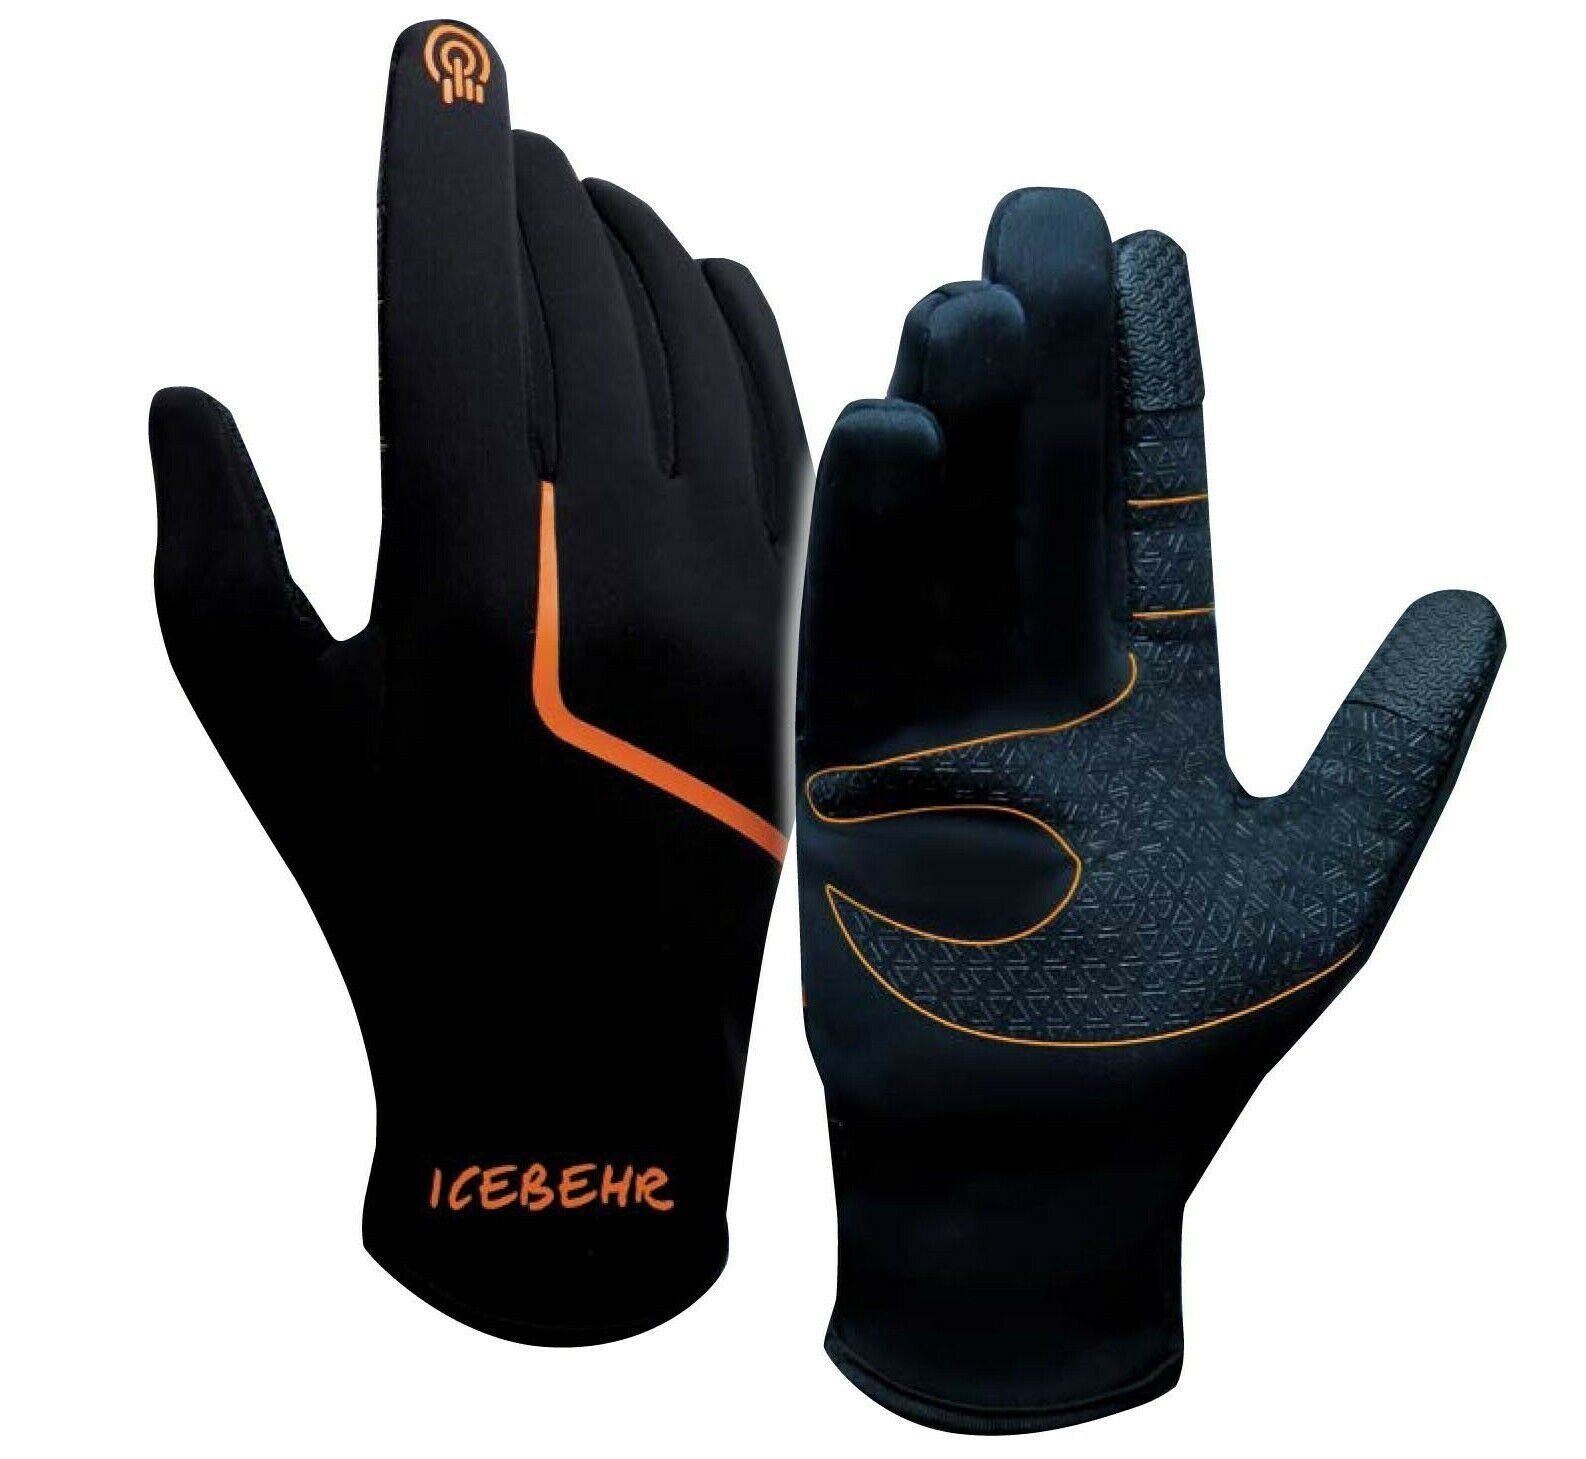 Behr Angelhandschuhe Microfleece Winterhandschuhe Touchfunktion  Angelhandschuhe M L XL Gear Touchscreen Funktion | Handschuhe